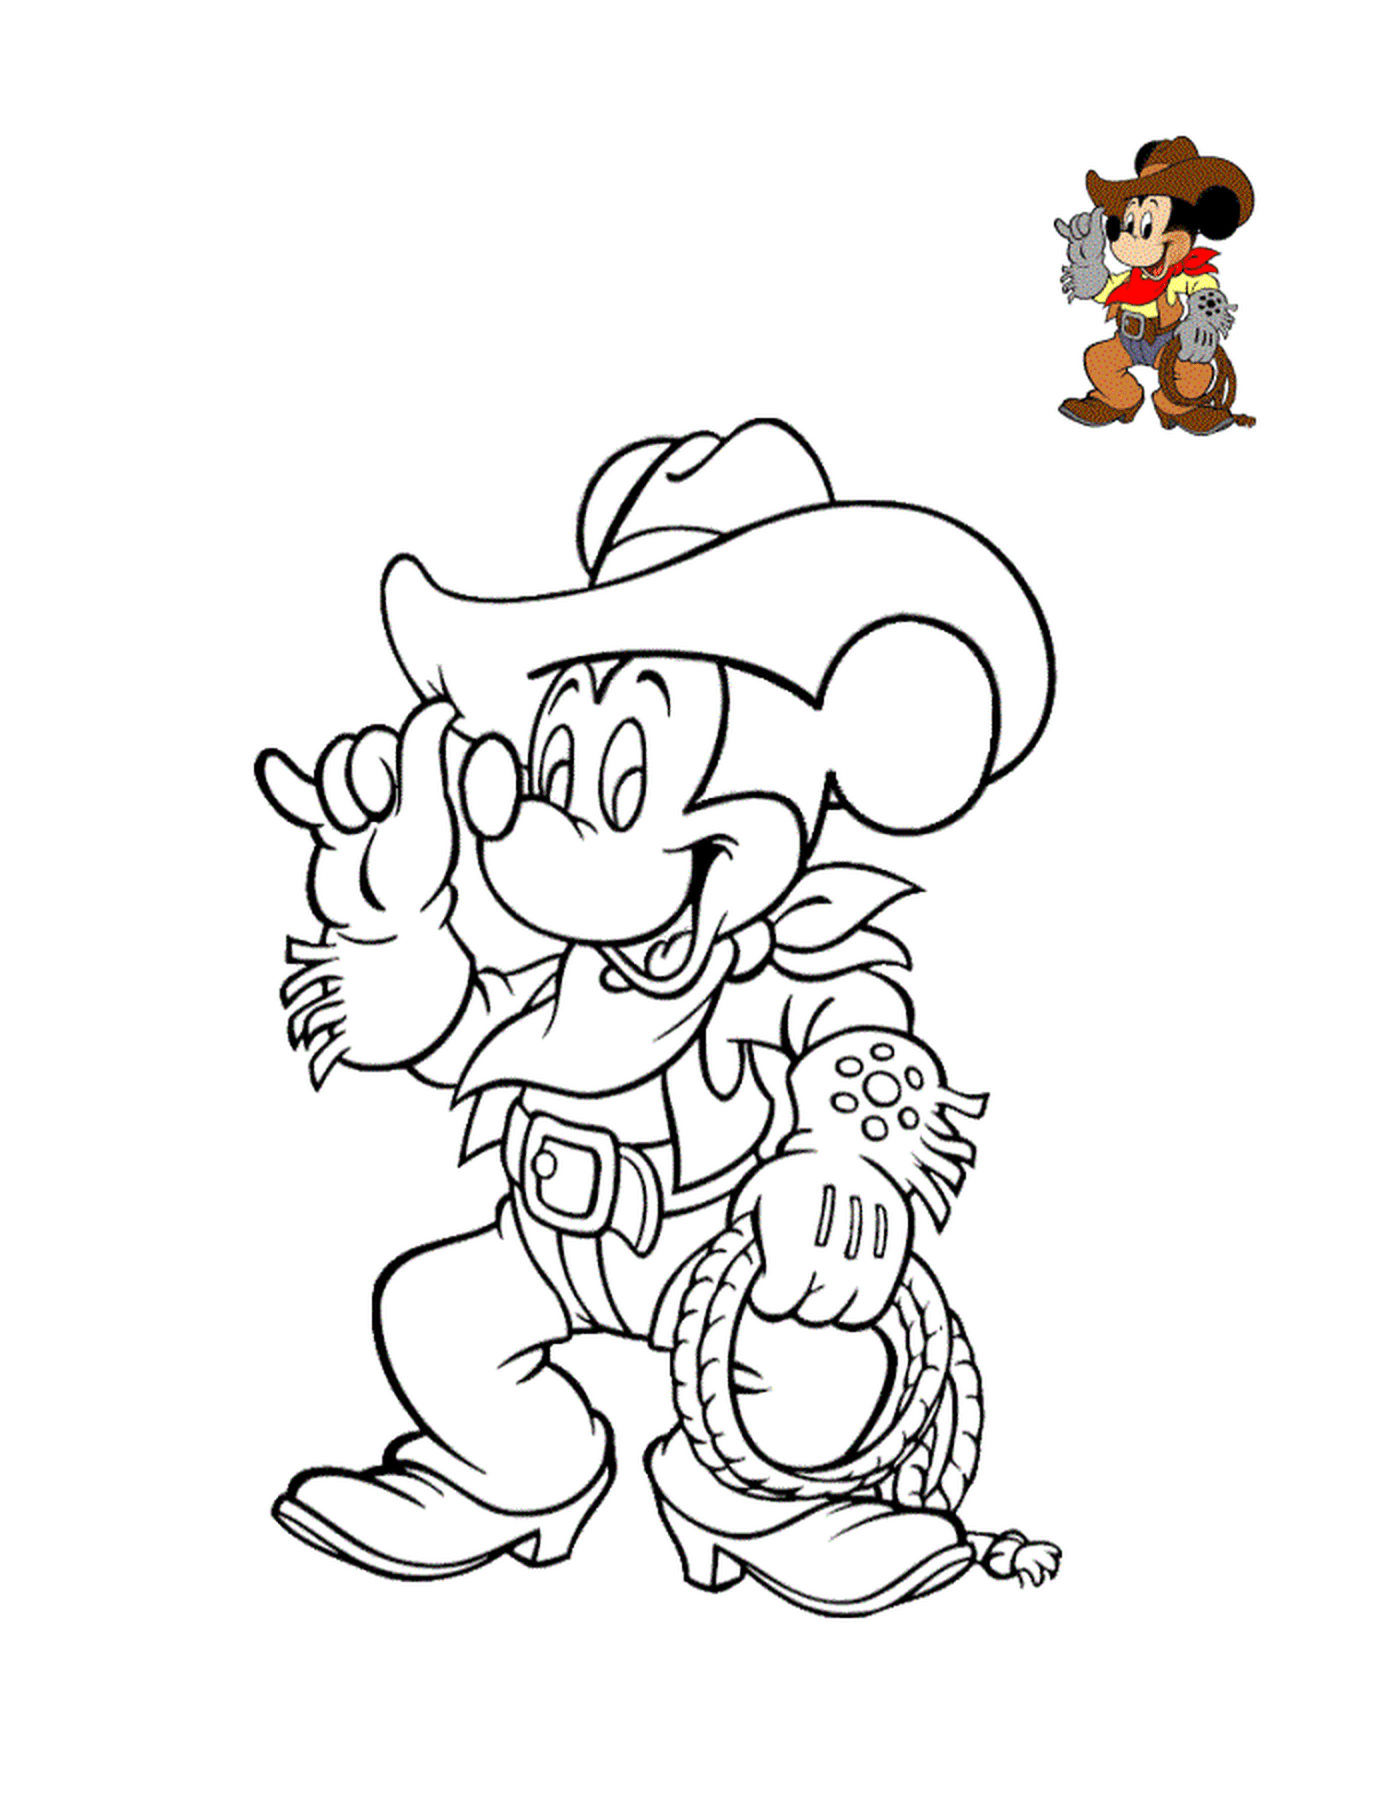 mickey mouse avec des bottes et chapeau cowboy